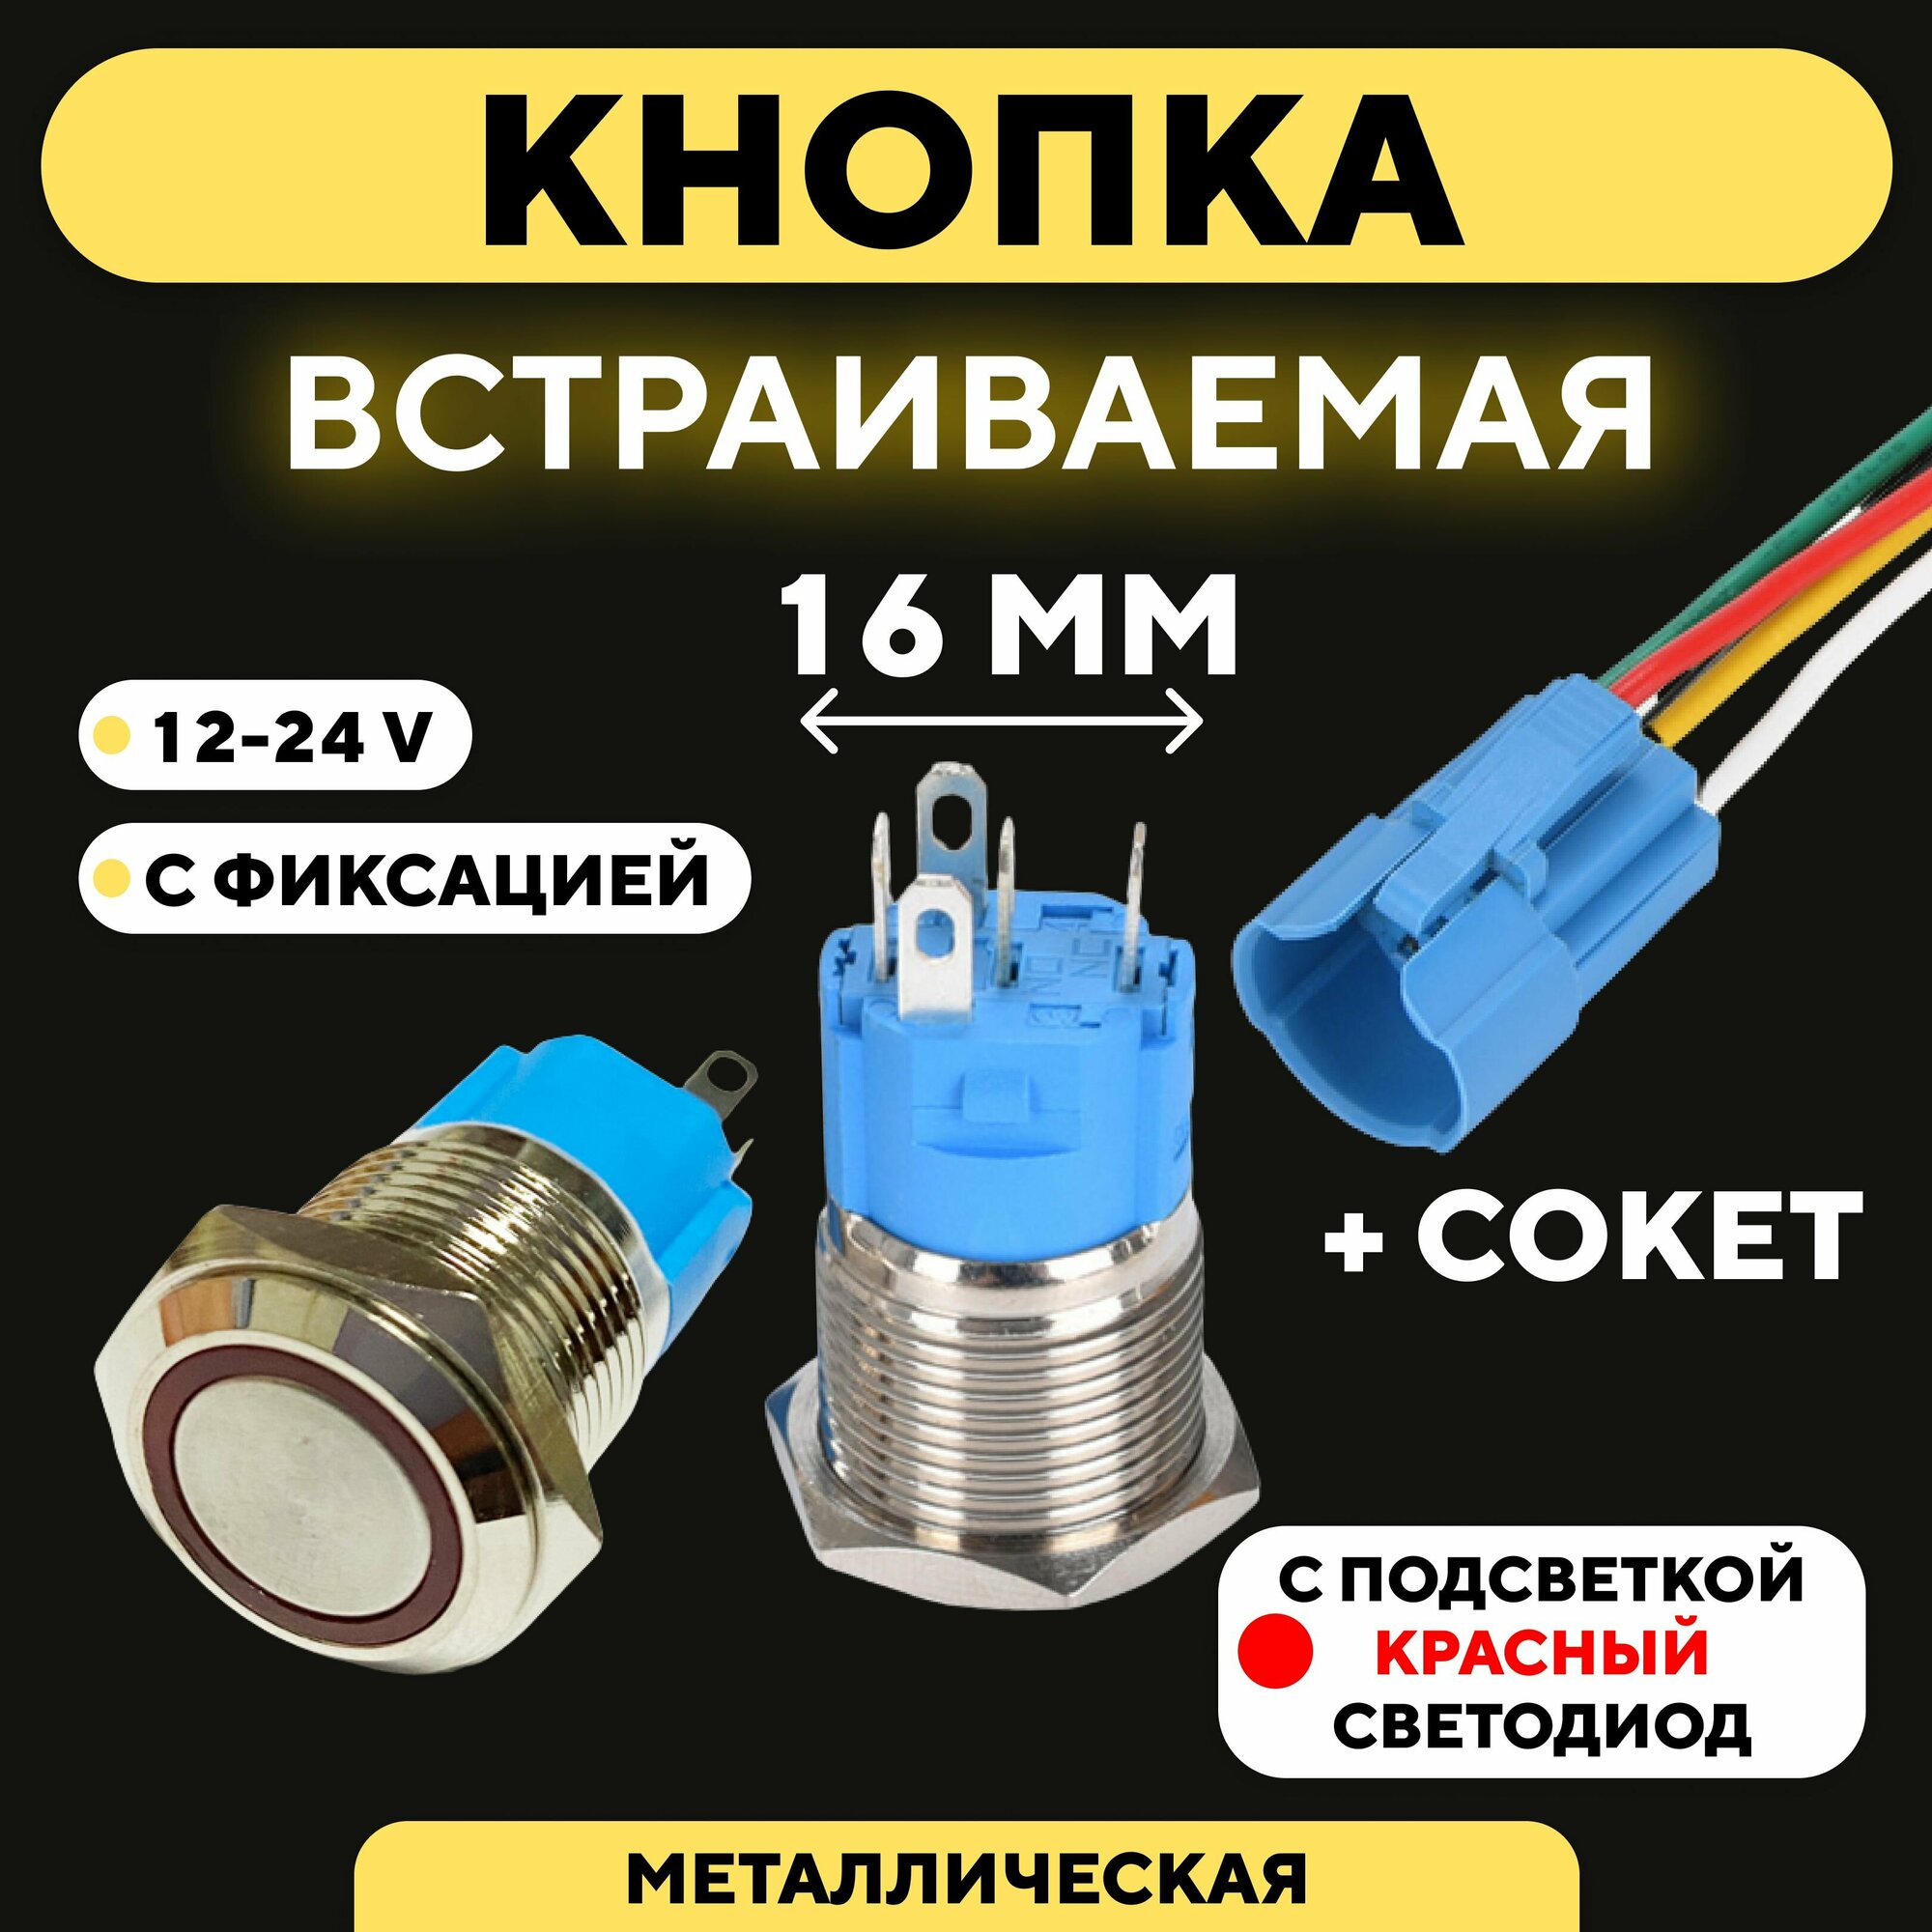 Кнопка для монтажа на корпус металлическая с индикатором (12-24 В, 16 мм) / С фиксацией / Круг / Красный